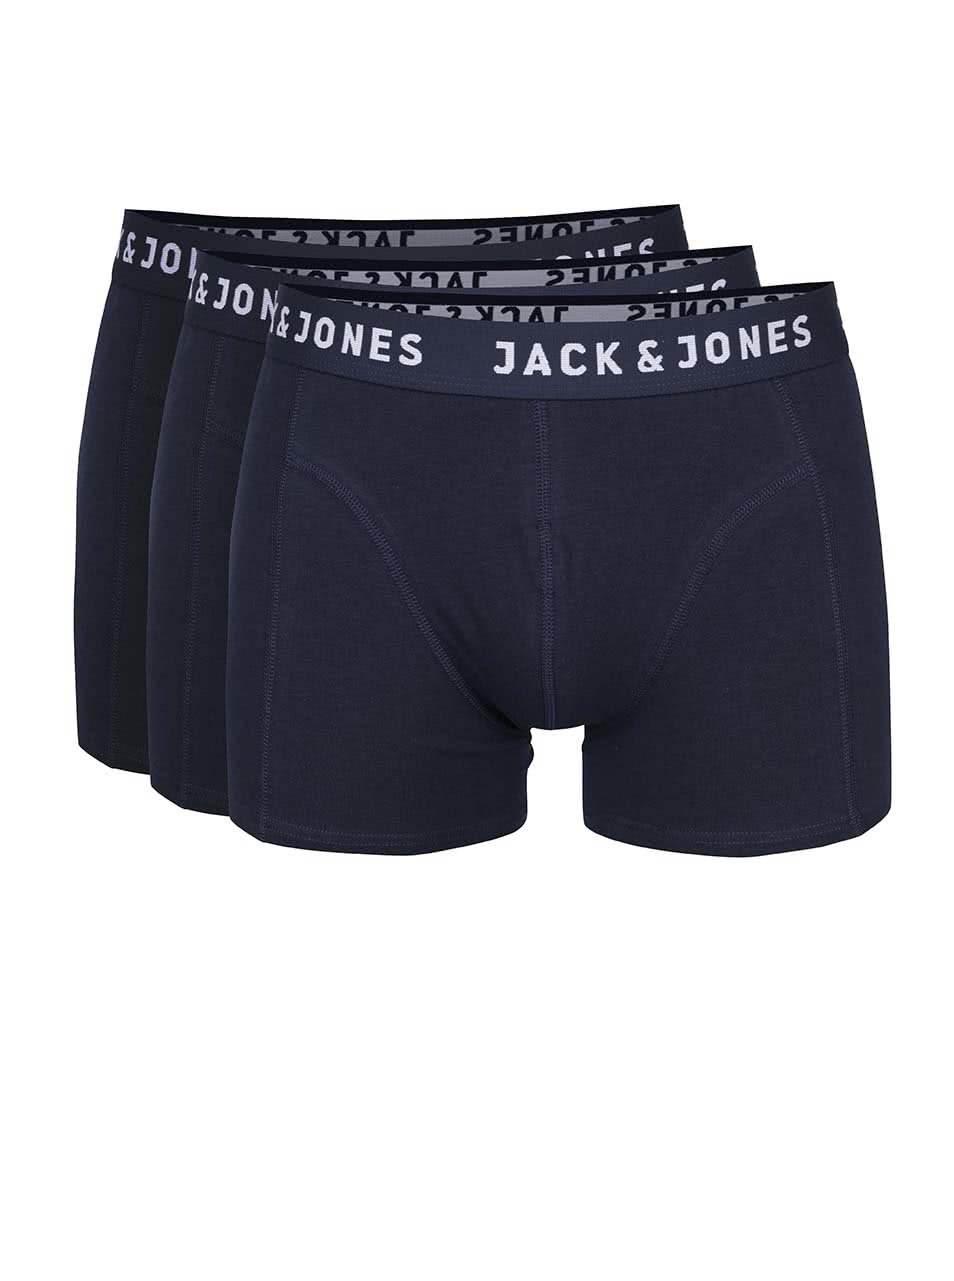 Sada tří tmavě modrých boxerek Jack & Jones Lincoln